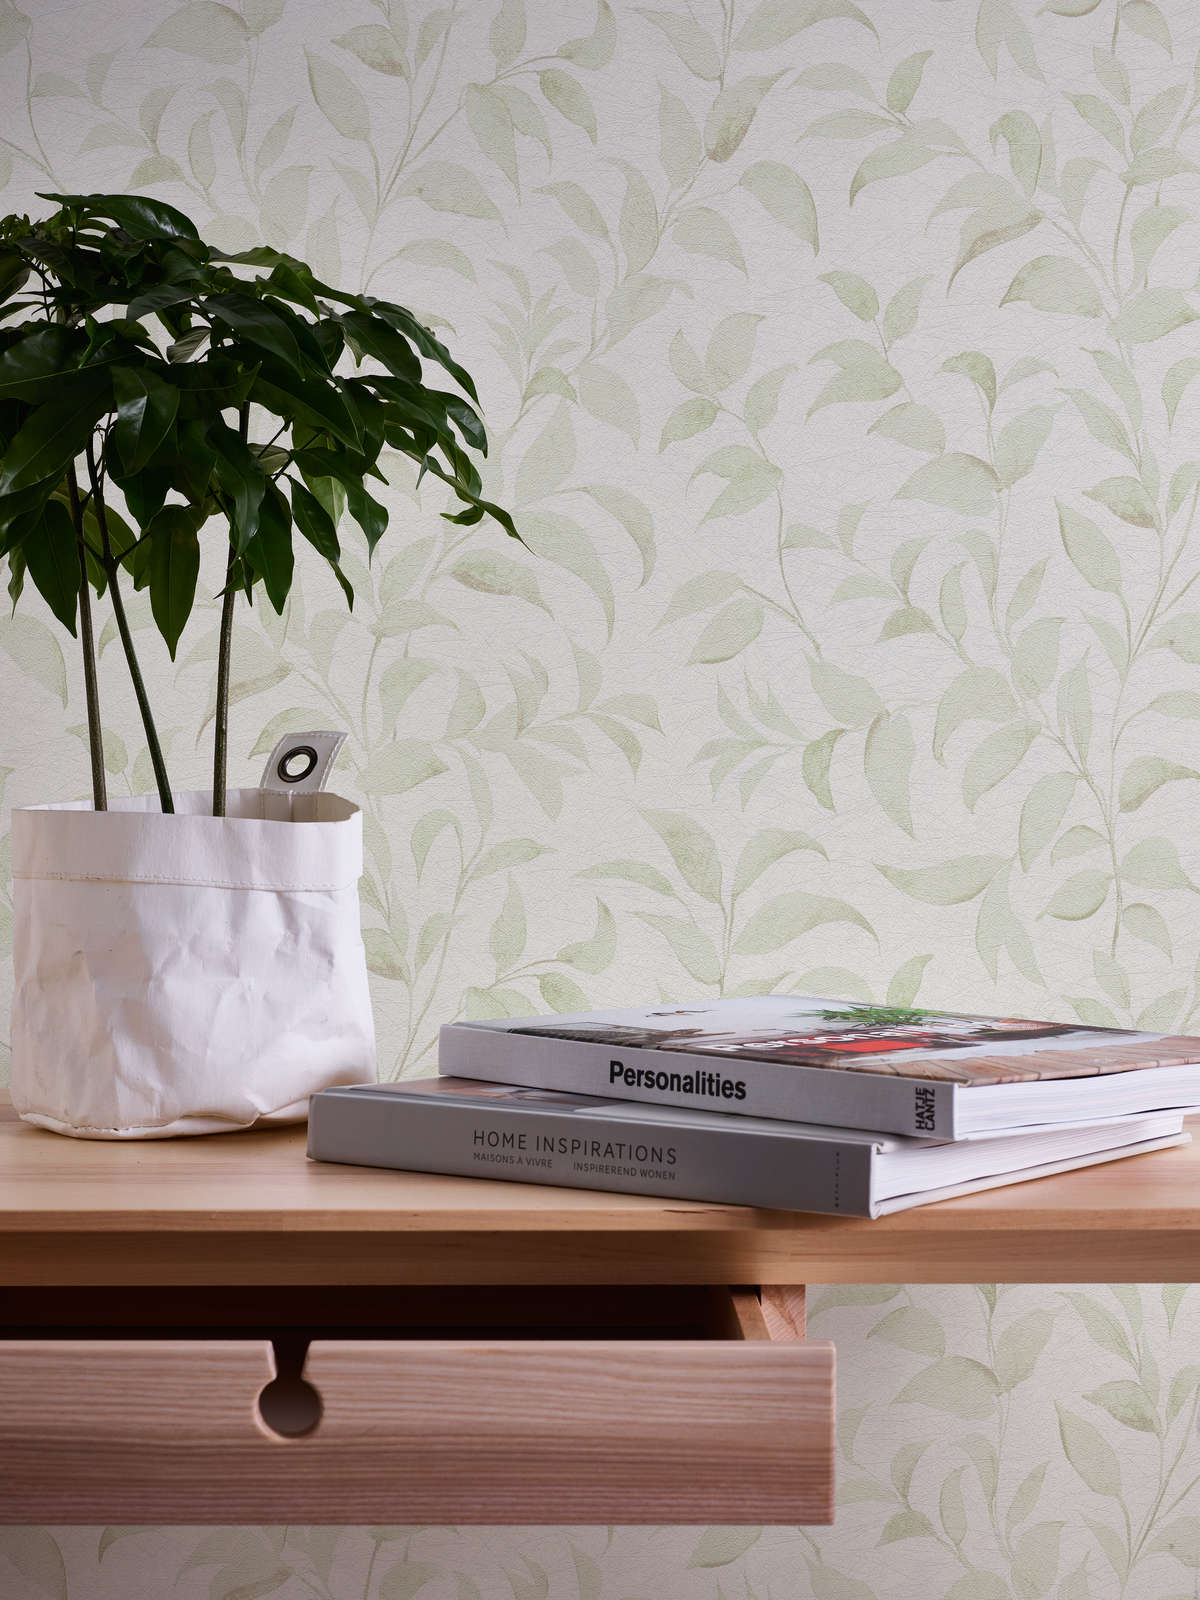             papier peint en papier feuilles floral chatoyant structuré - blanc, vert
        